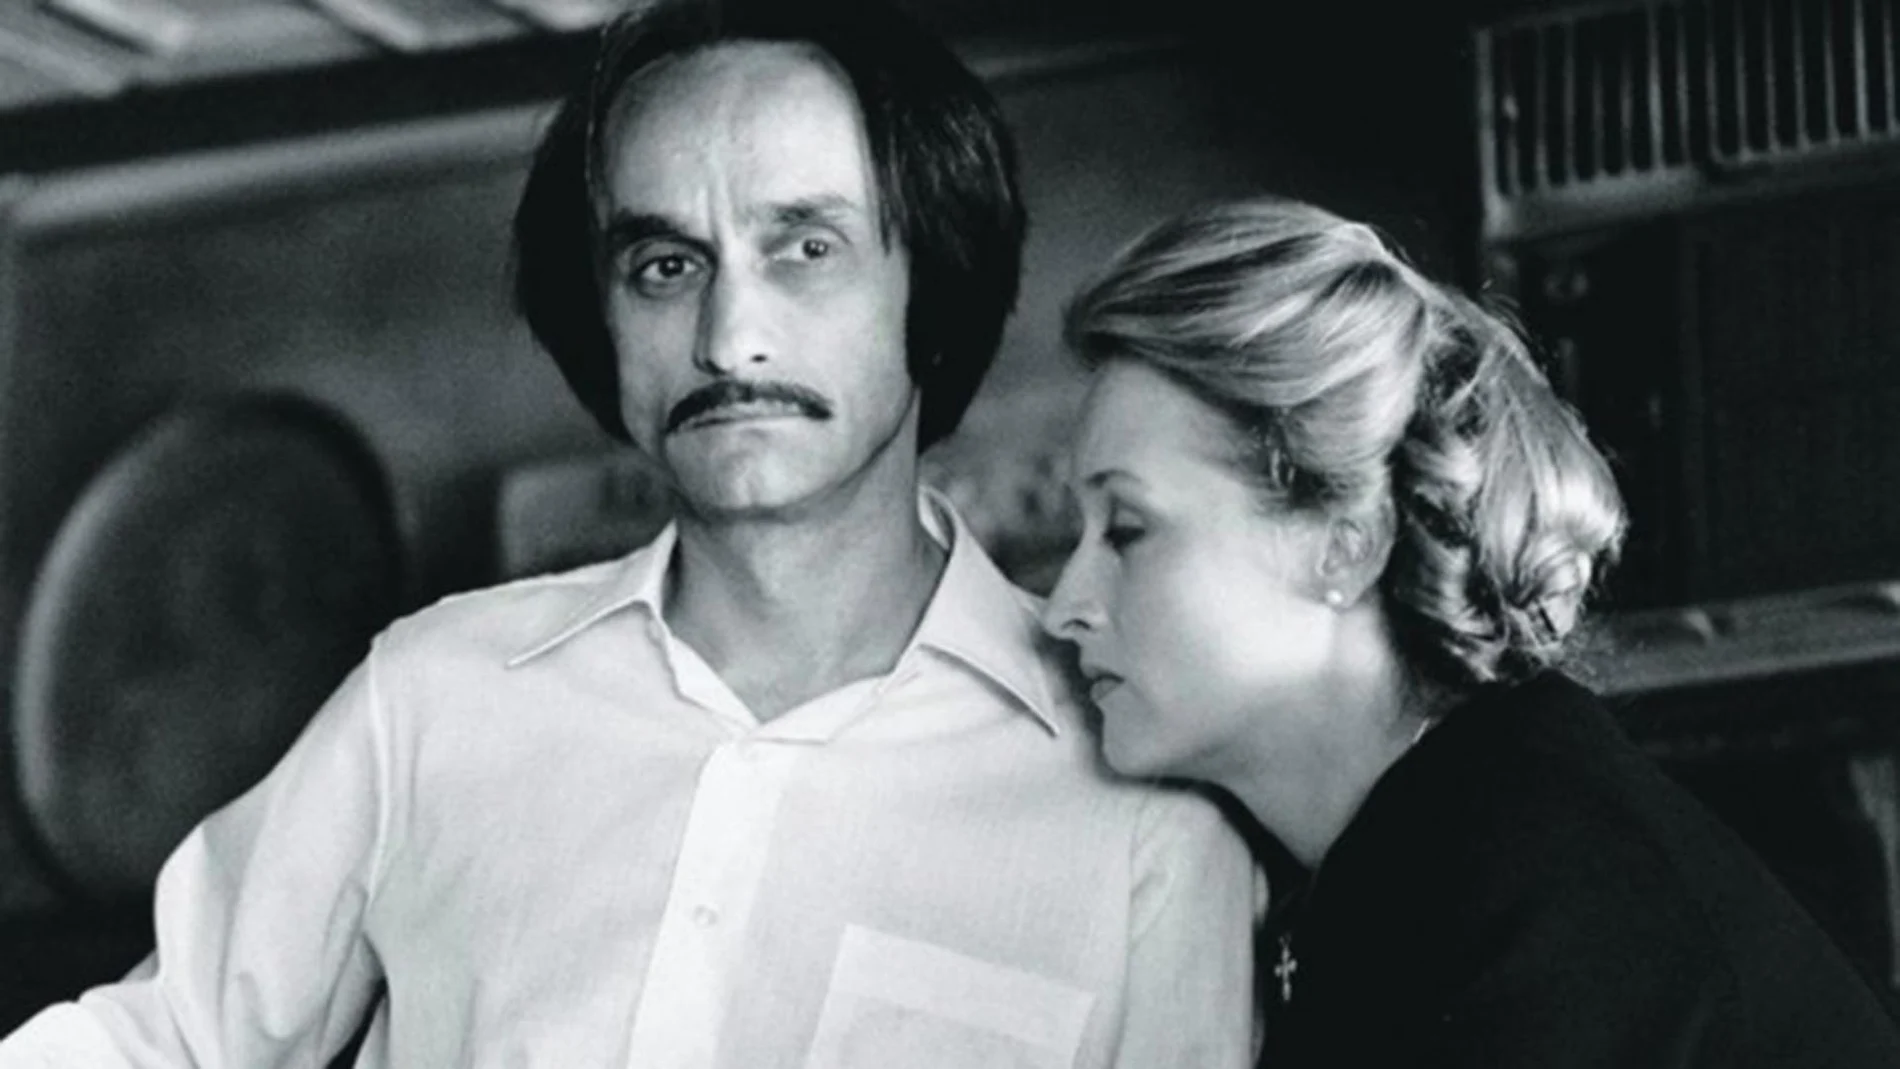 Cuando Meryl Streep y John Cazale se conocieron en Nueva York, él tenía 41 años y ella 27, pero la diferencia de edad nunca supuso un problema para ellos